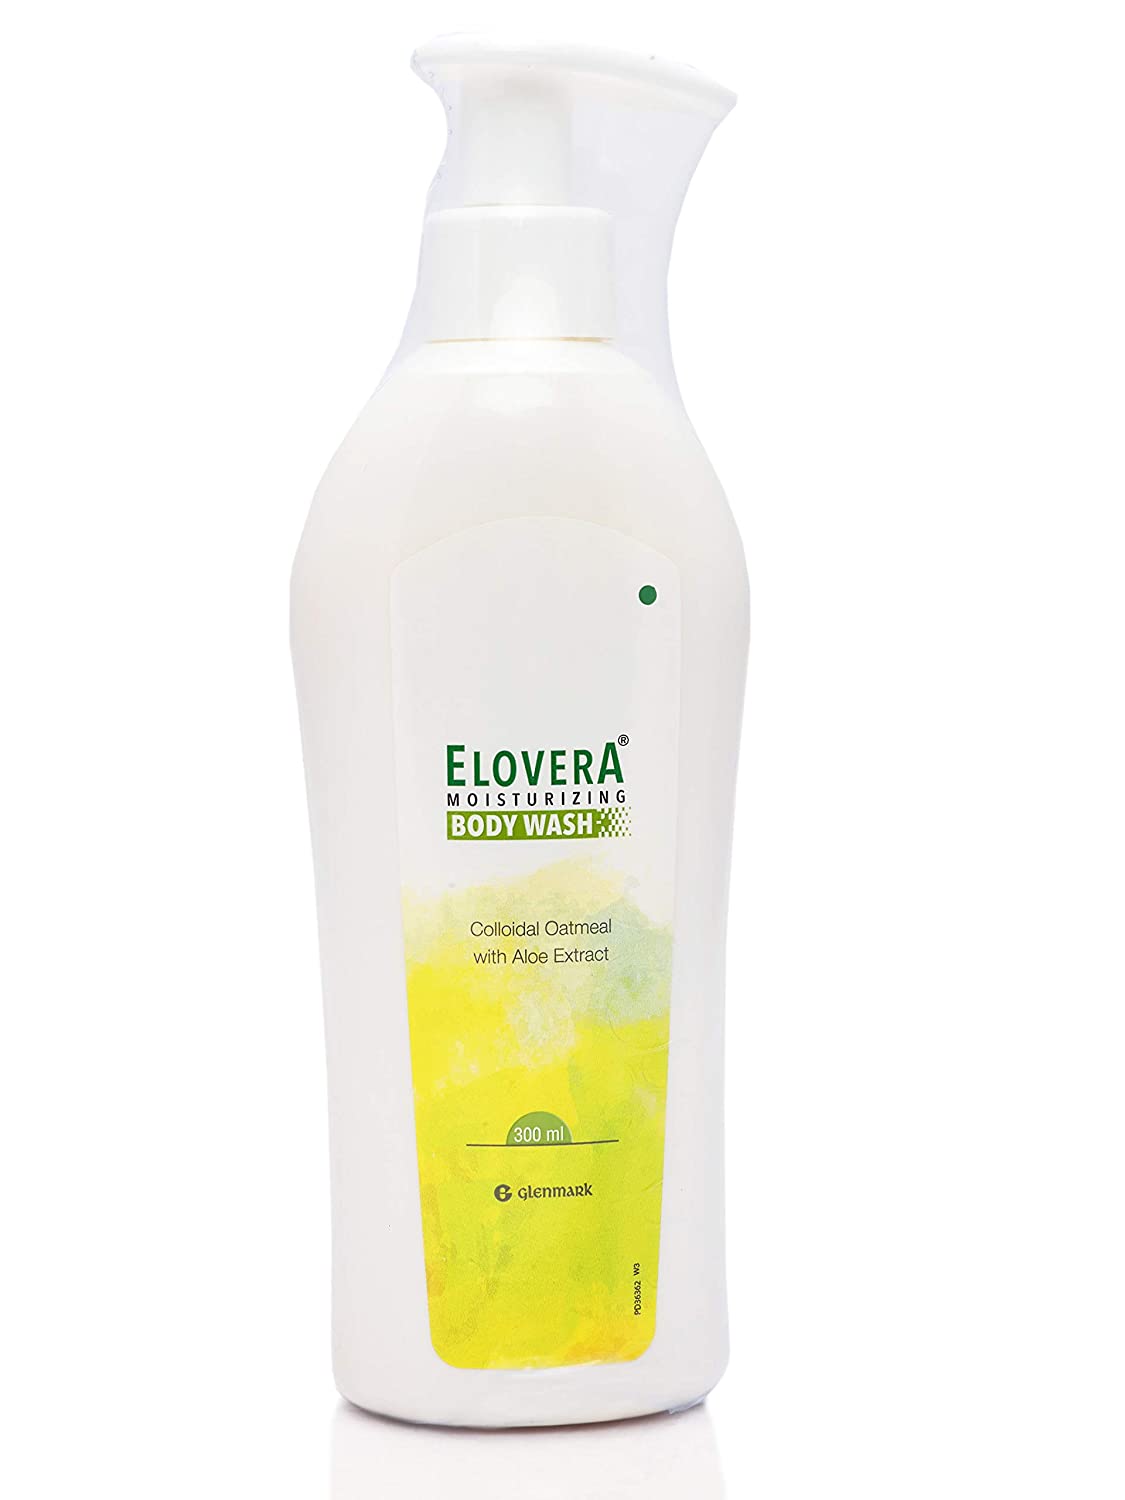 Buy Elovera Moisturizing Body Wash, 300 ml Online